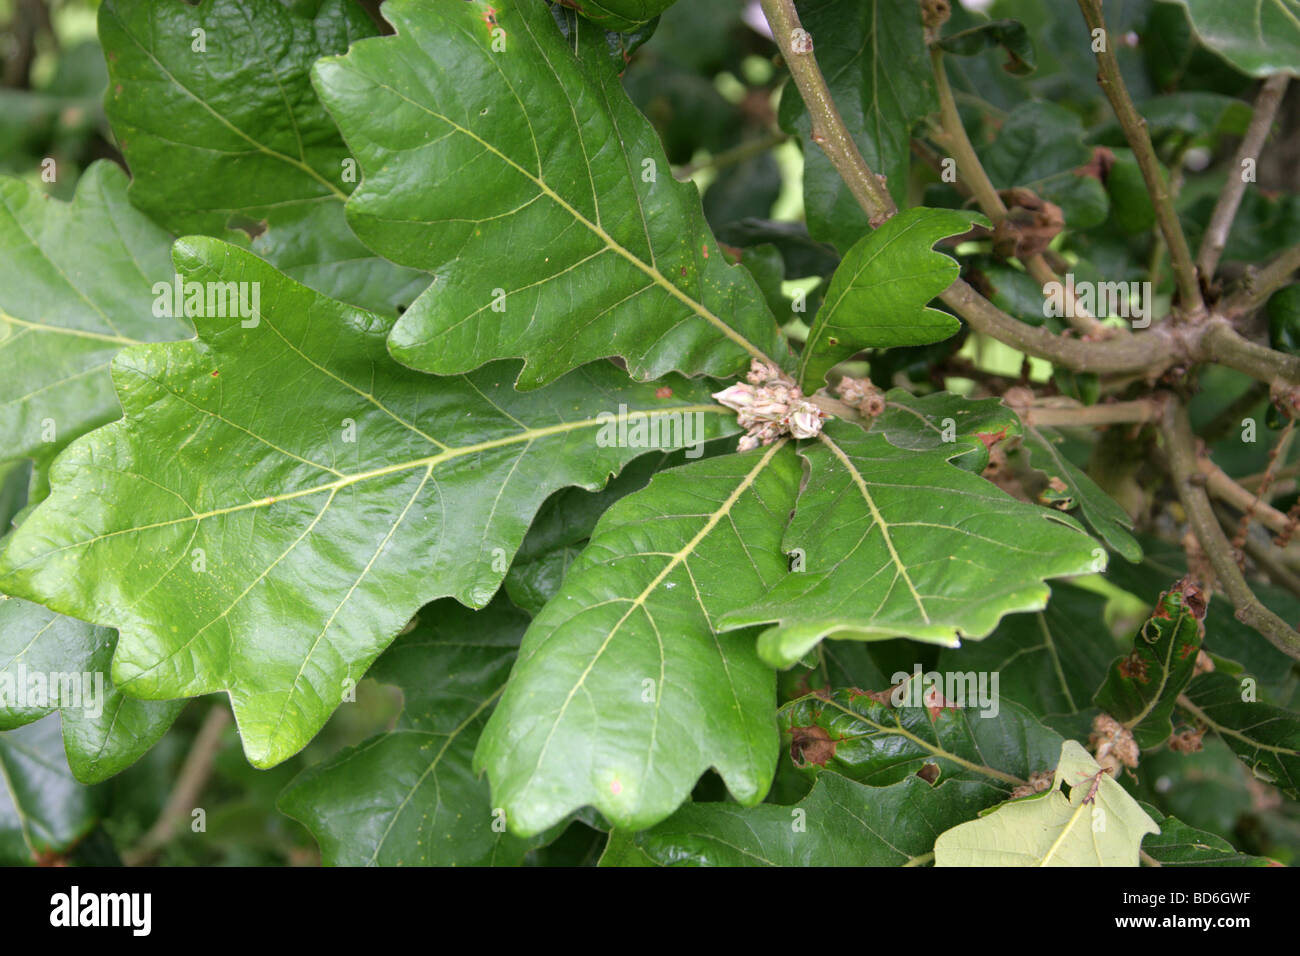 Daimyo Quercia foglie, Quercus dentata syn Quercus maccormickii, Fagaceae, Asia orientale. Foto Stock